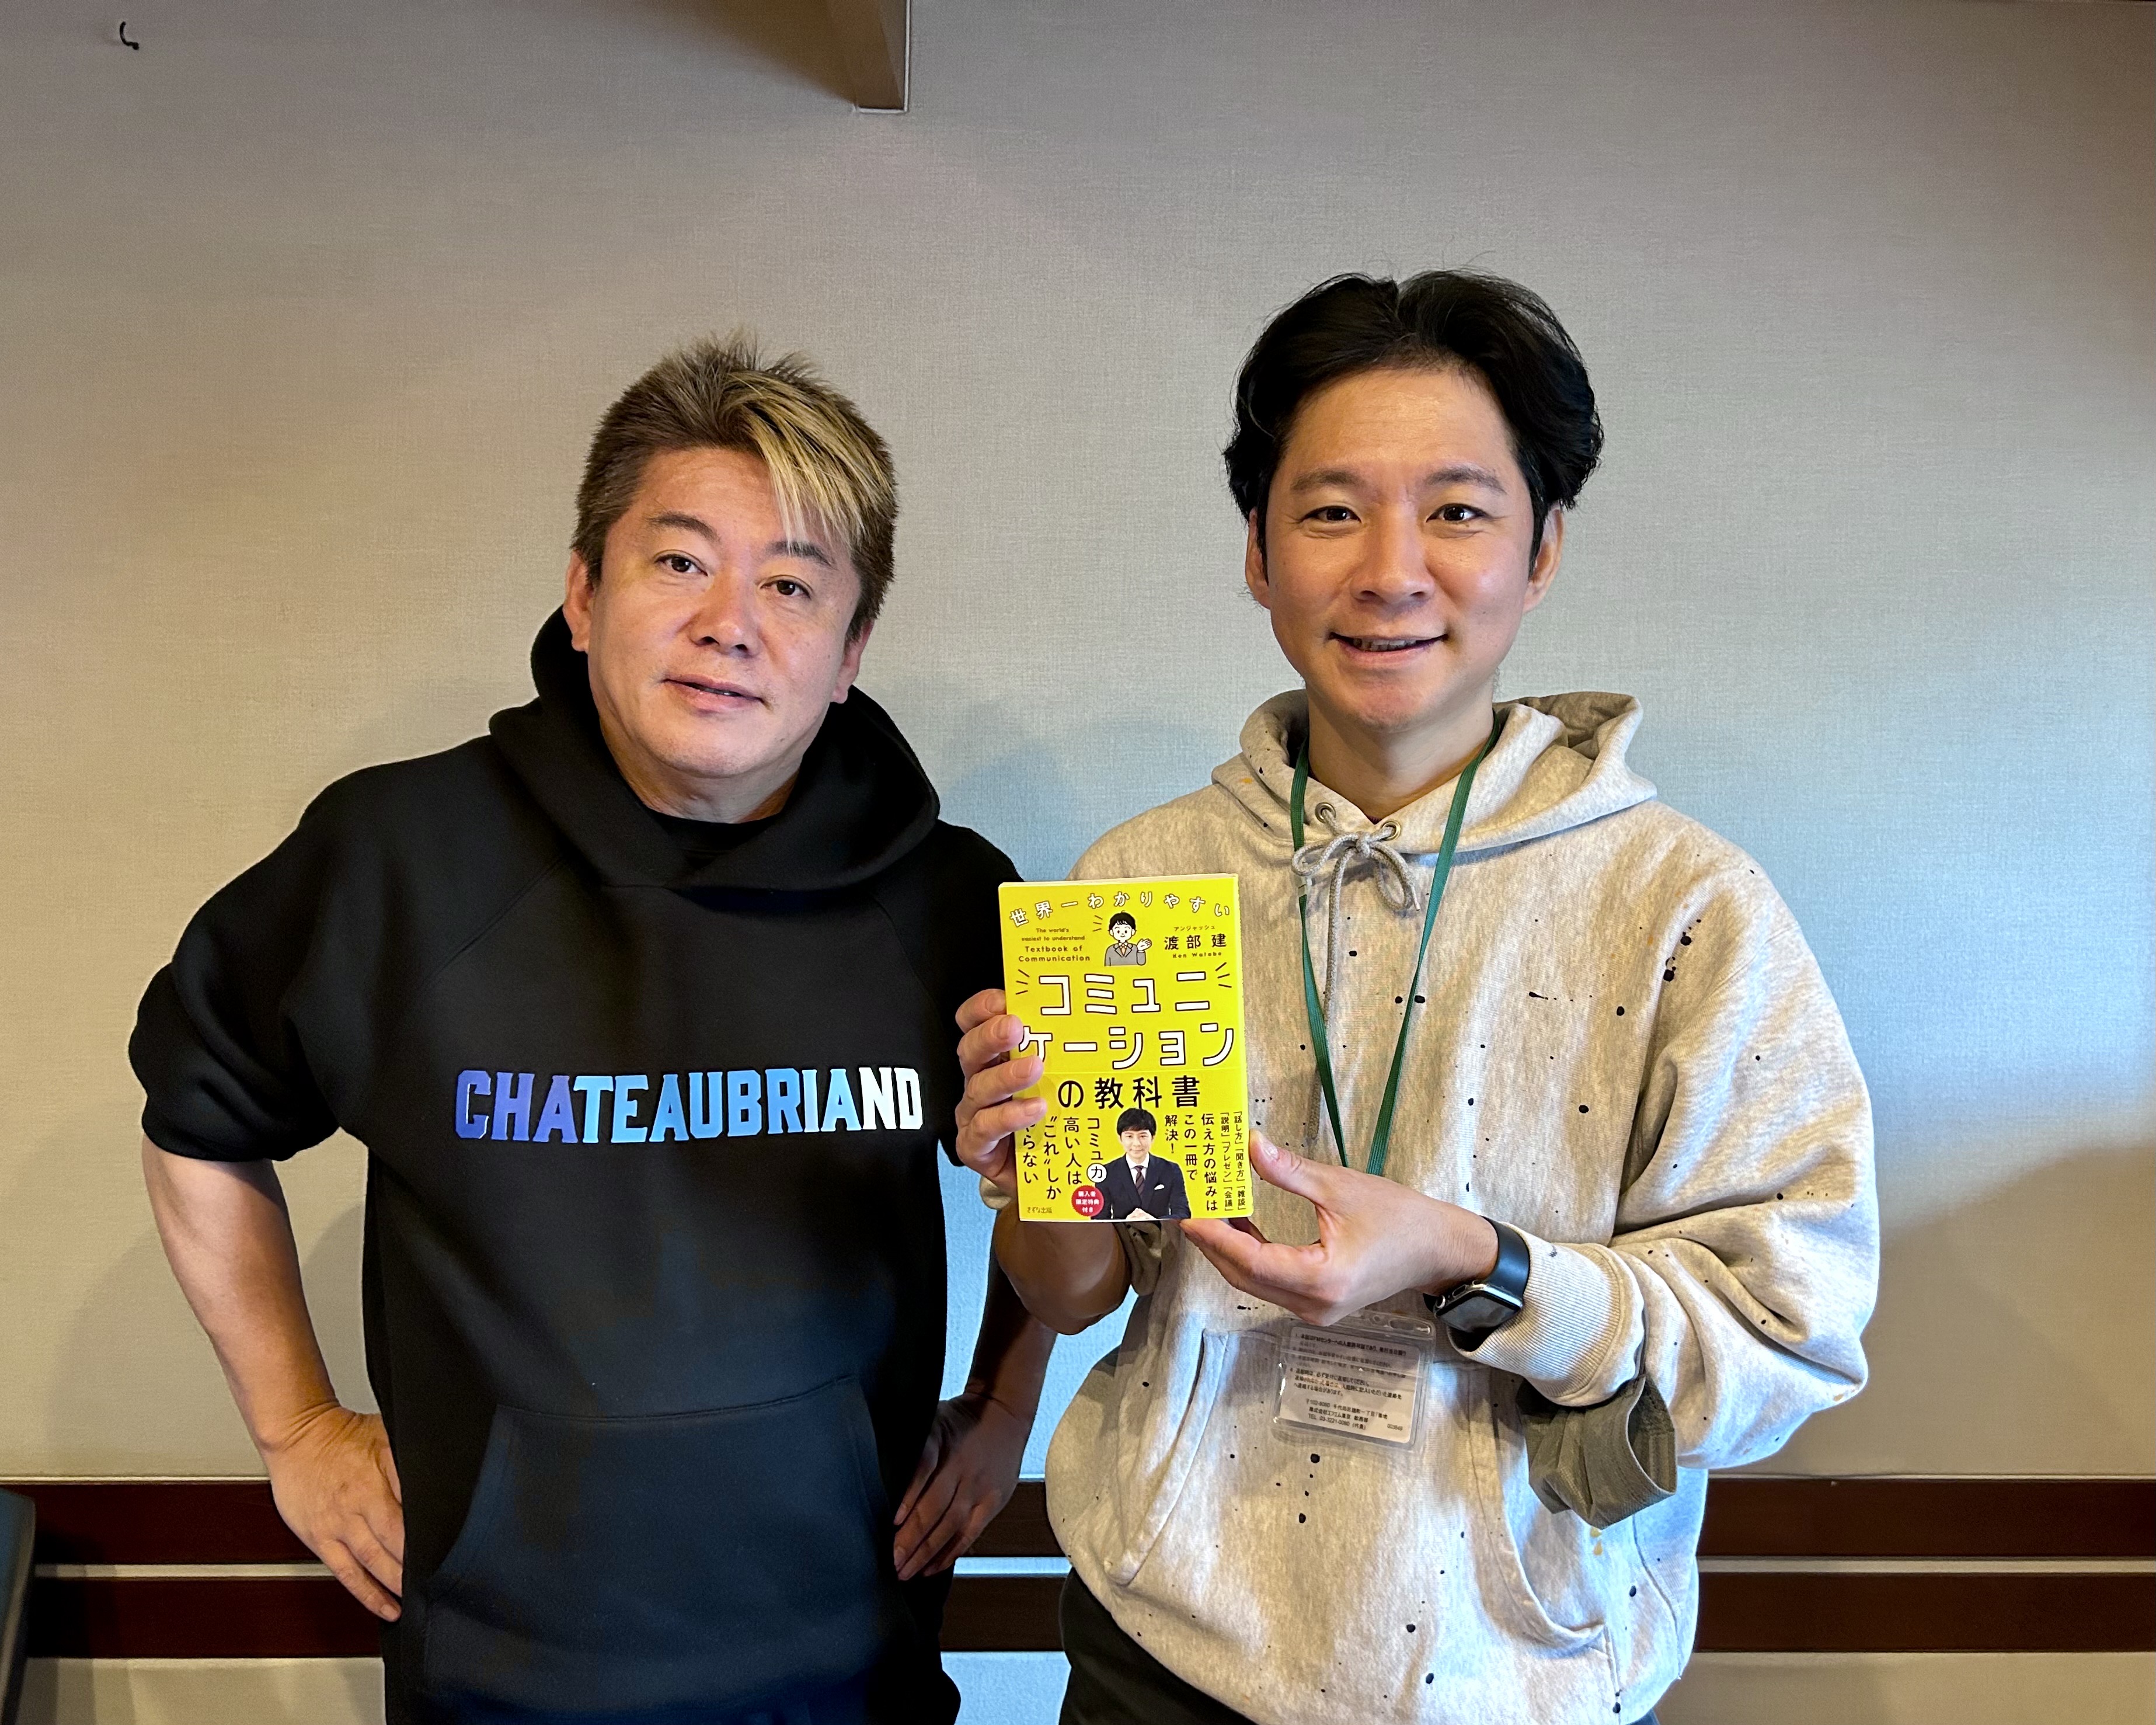 水曜日の常連客 堀江貴文さんと、芸人・渡部健さんの話を盗み聞き・・・グルメを通したビジネス、そして大事なコミュ力について語る30分。